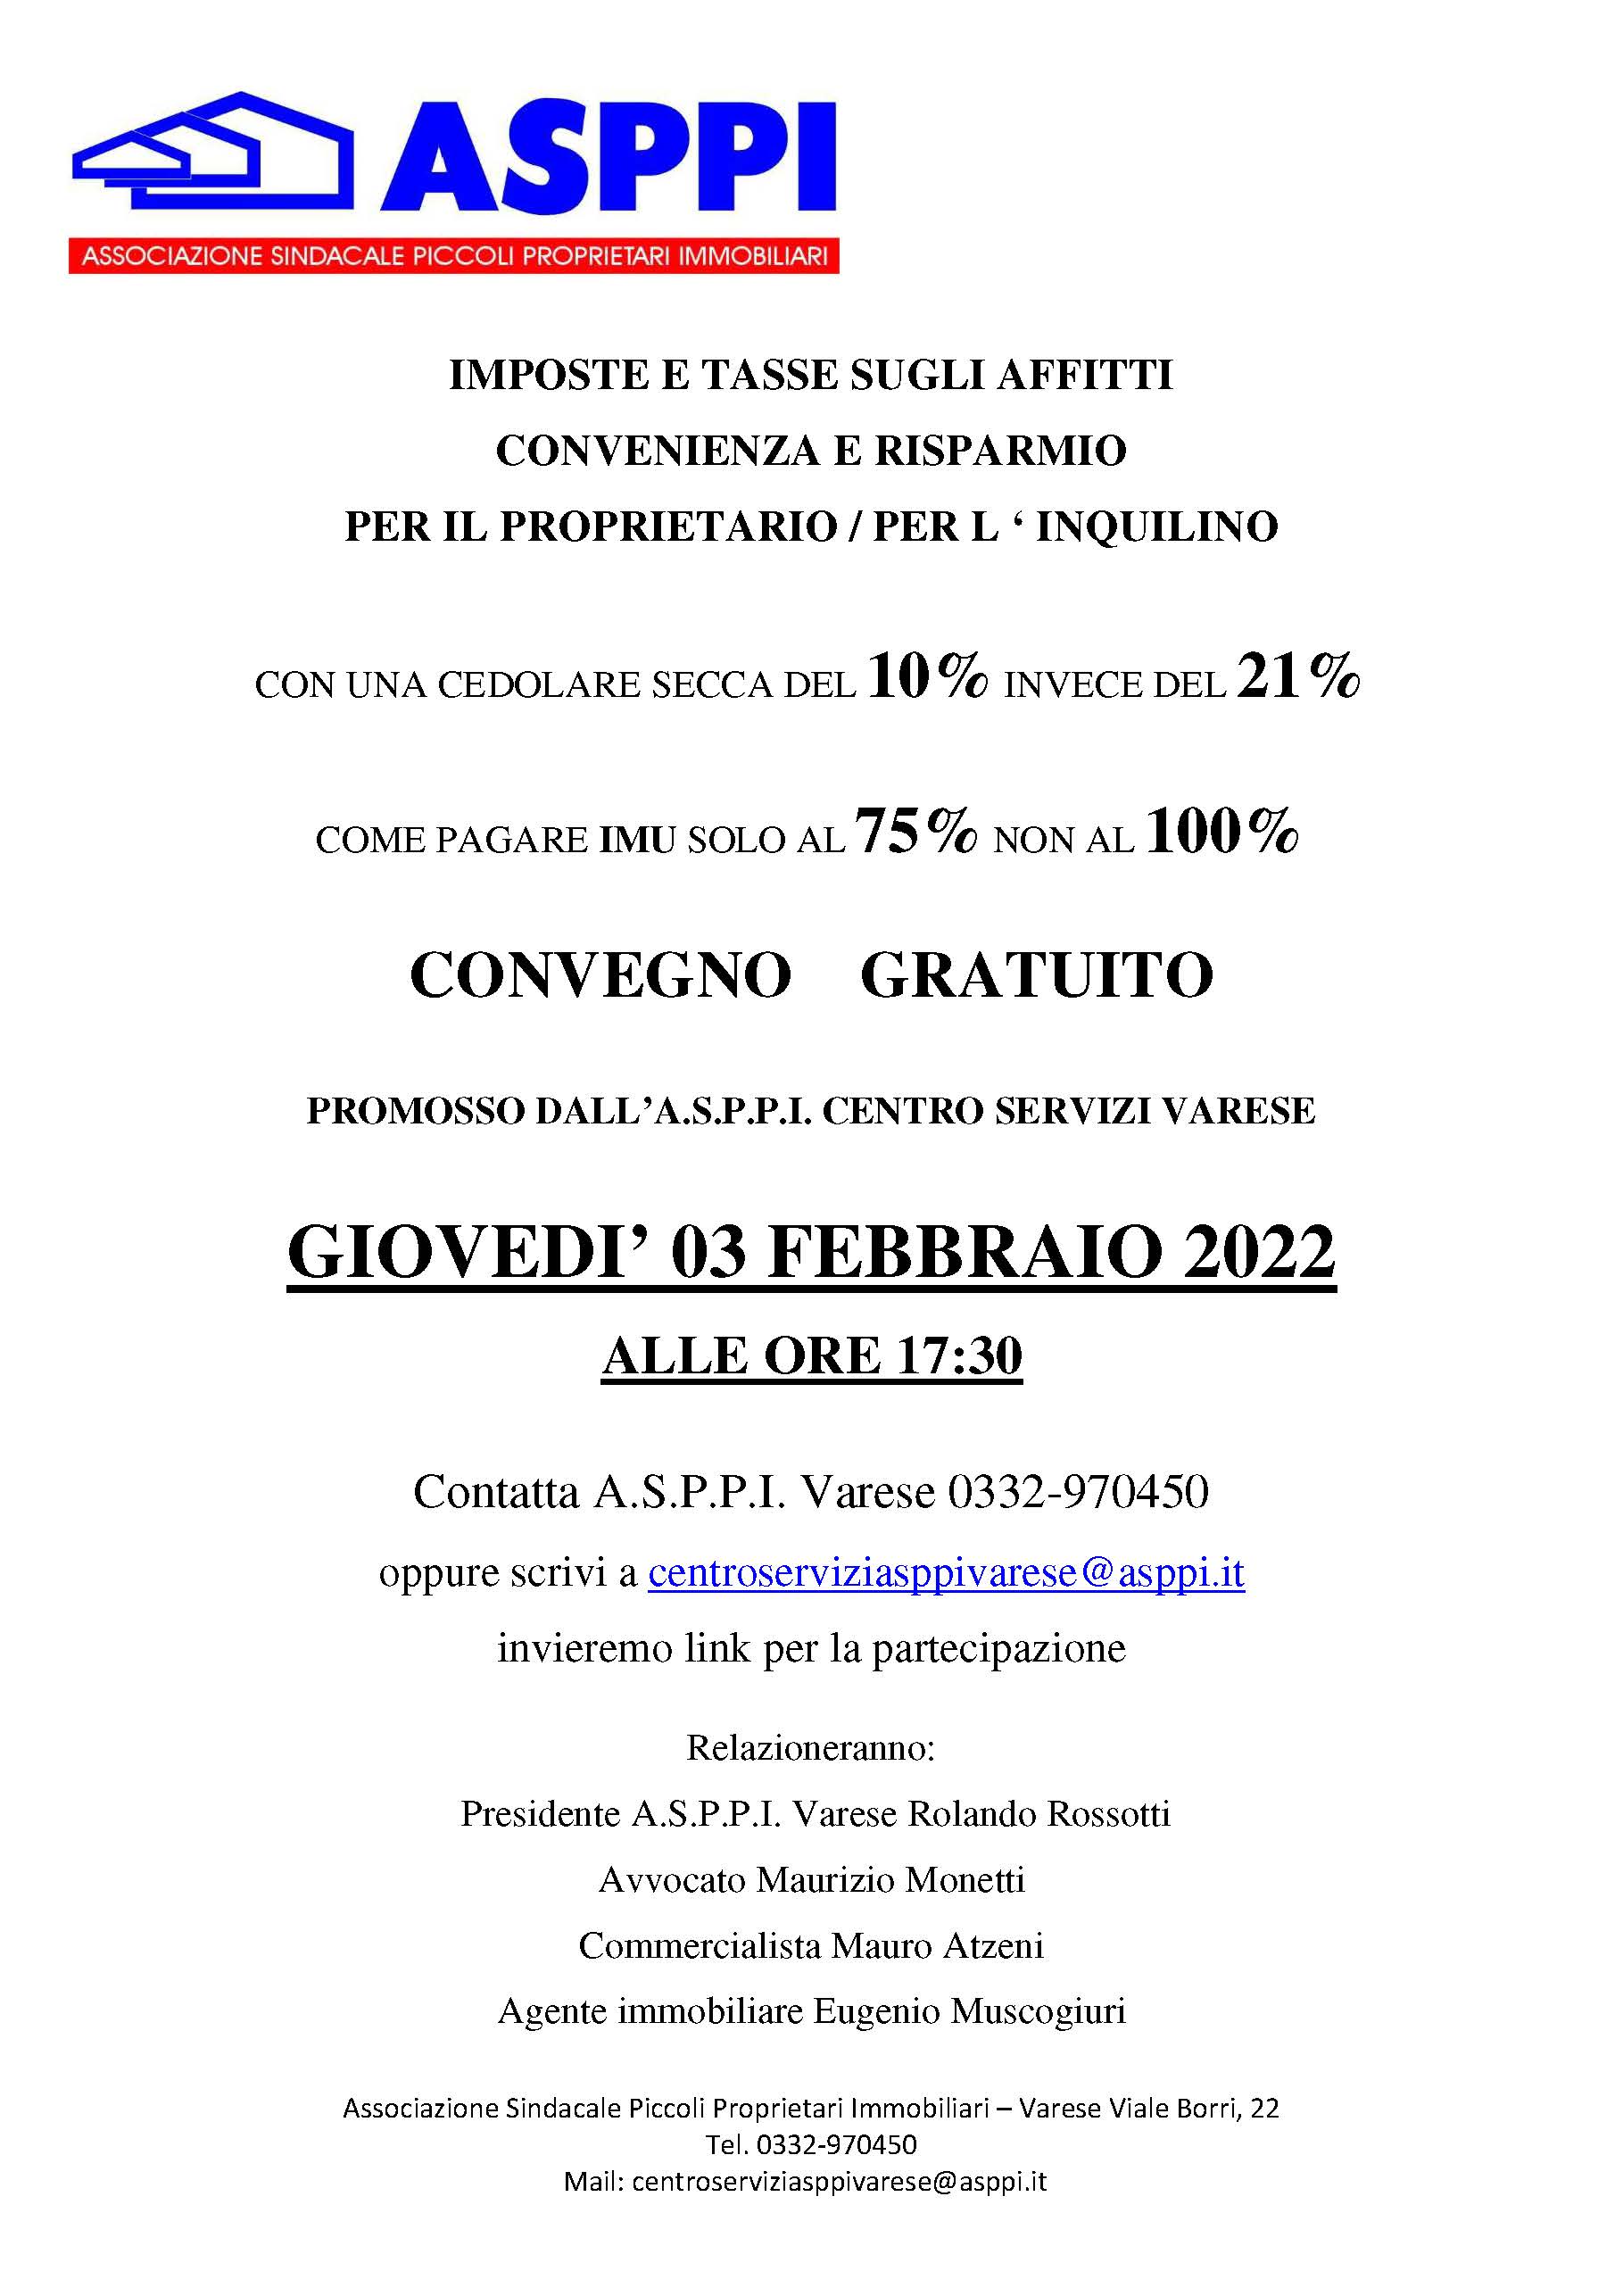 ASPPI – Centro Servizi Varese: Convegno – Imposte e tasse sugli affitti